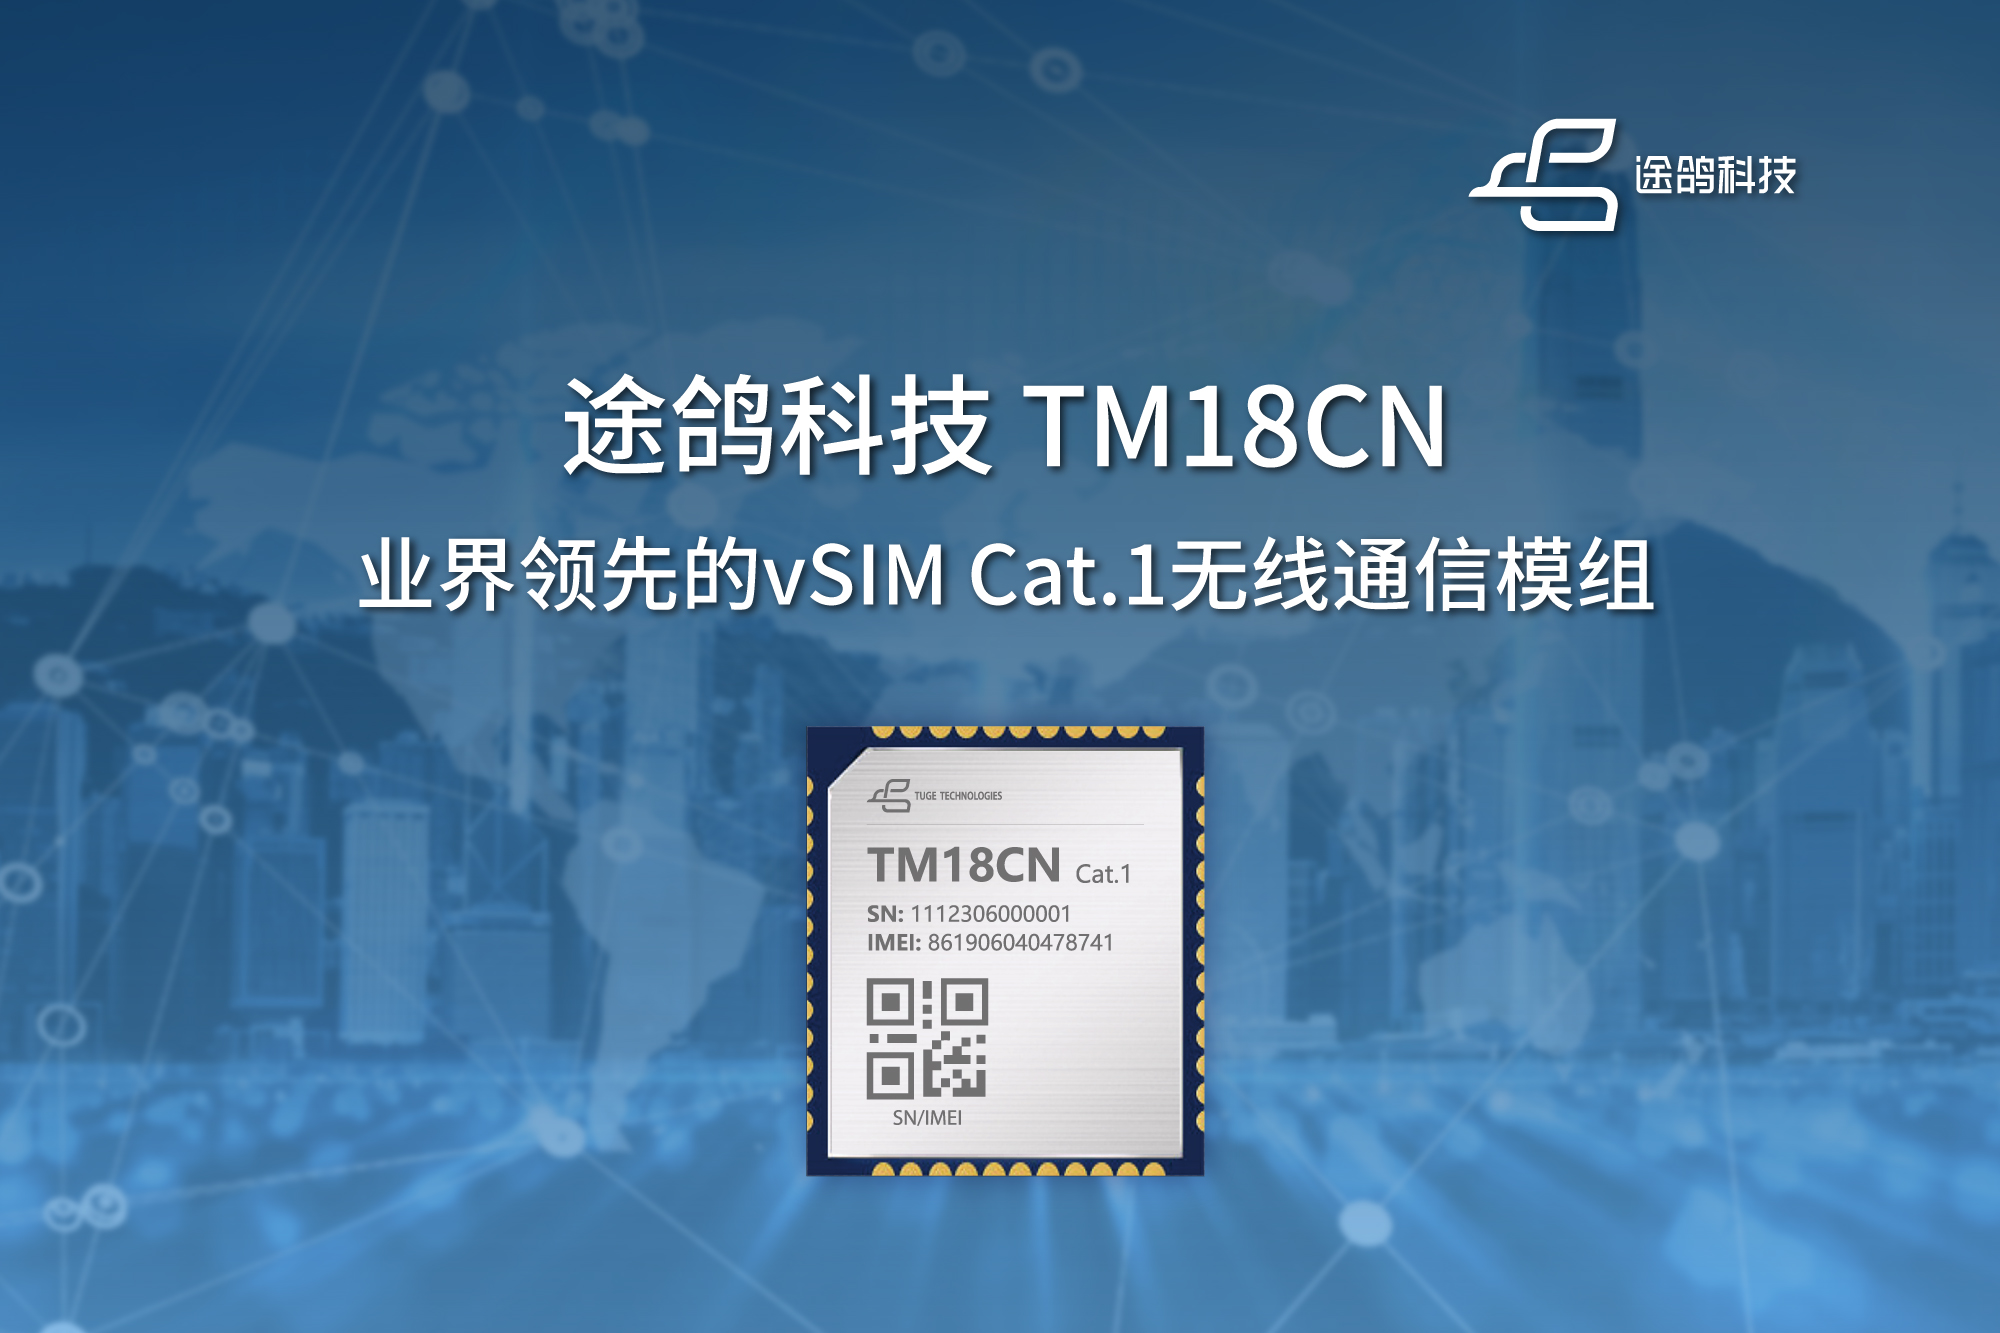 途鸽科技在MWC发布业界领先的vSIM Cat.1模组